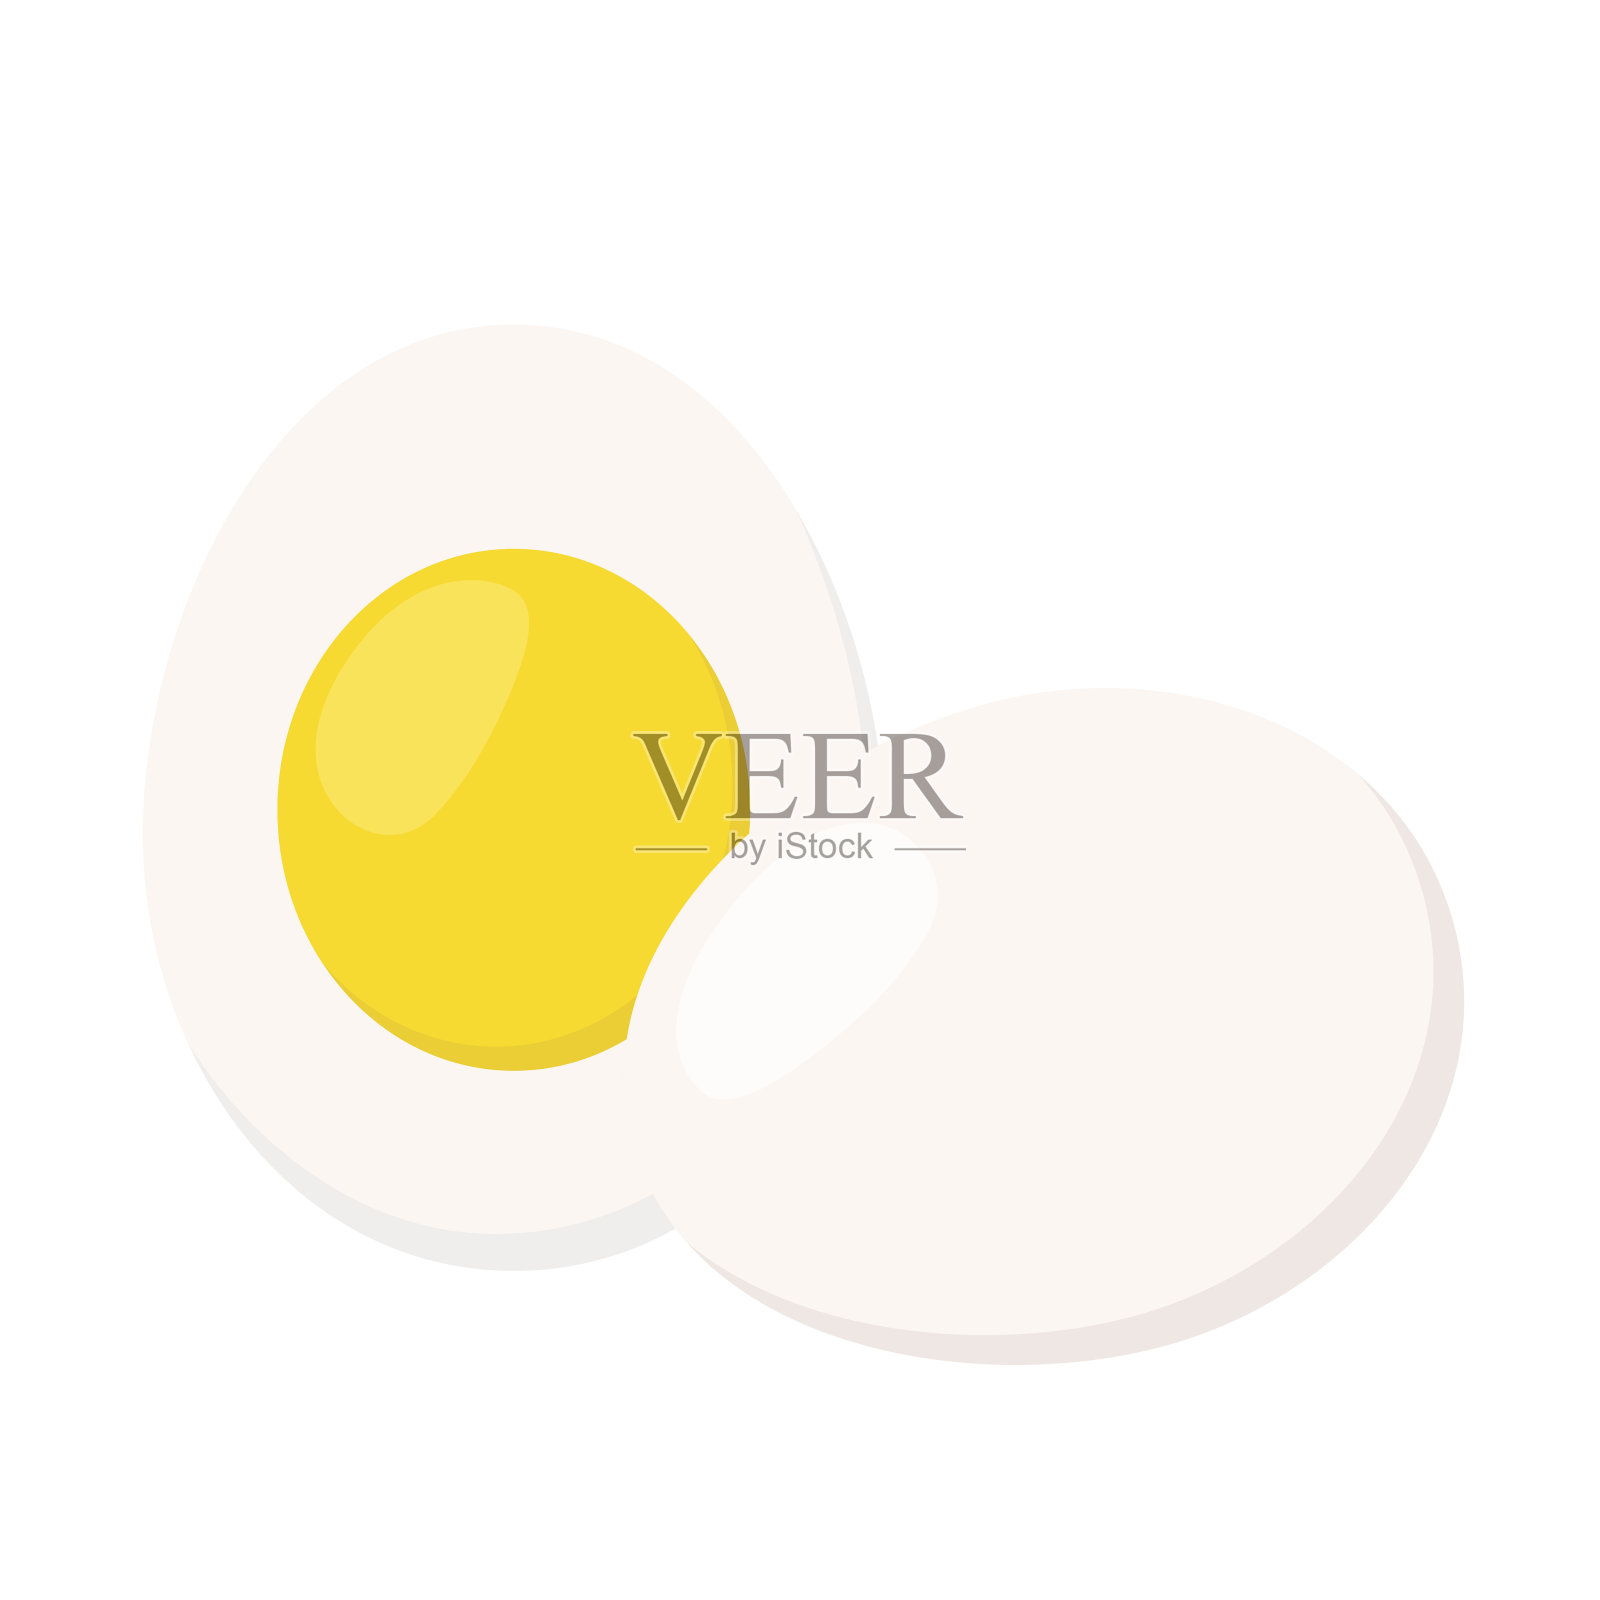 平鸡蛋。健康的蛋白质营养。农场新鲜的鸡蛋。设计元素图片